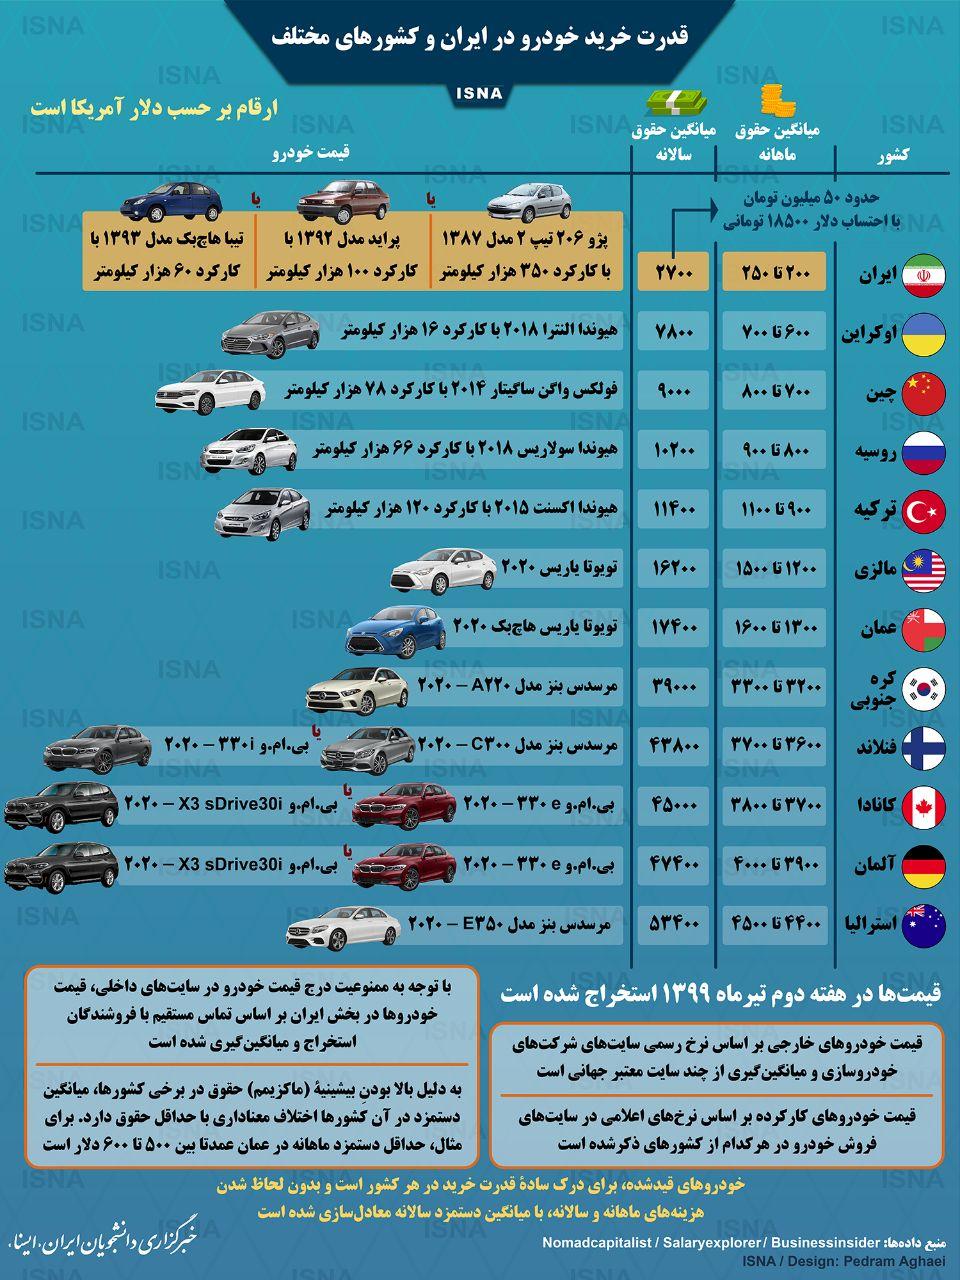 اینفوگرافی/ مقایسه قدرت خرید خودرو در ایران و کشورهای مختلف